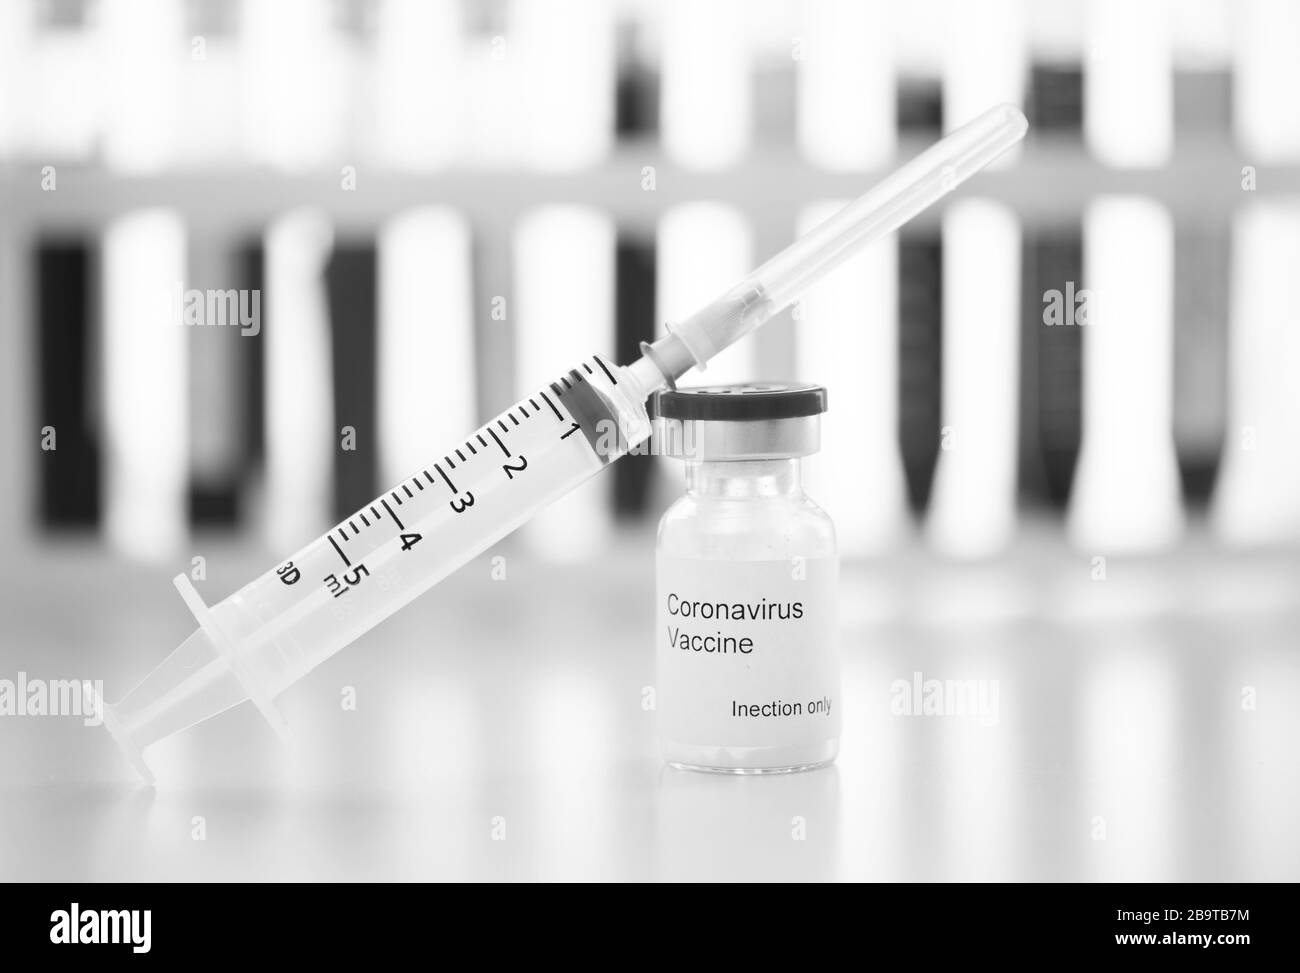 Reagenzgläser mit Blutproben-Covid-19-Coronavirus. Impfstoff- und Spritzenspritzeninjektion, die es zur Vorbeugung, Immunisierung und Behandlung von COVID verwendet Stockfoto